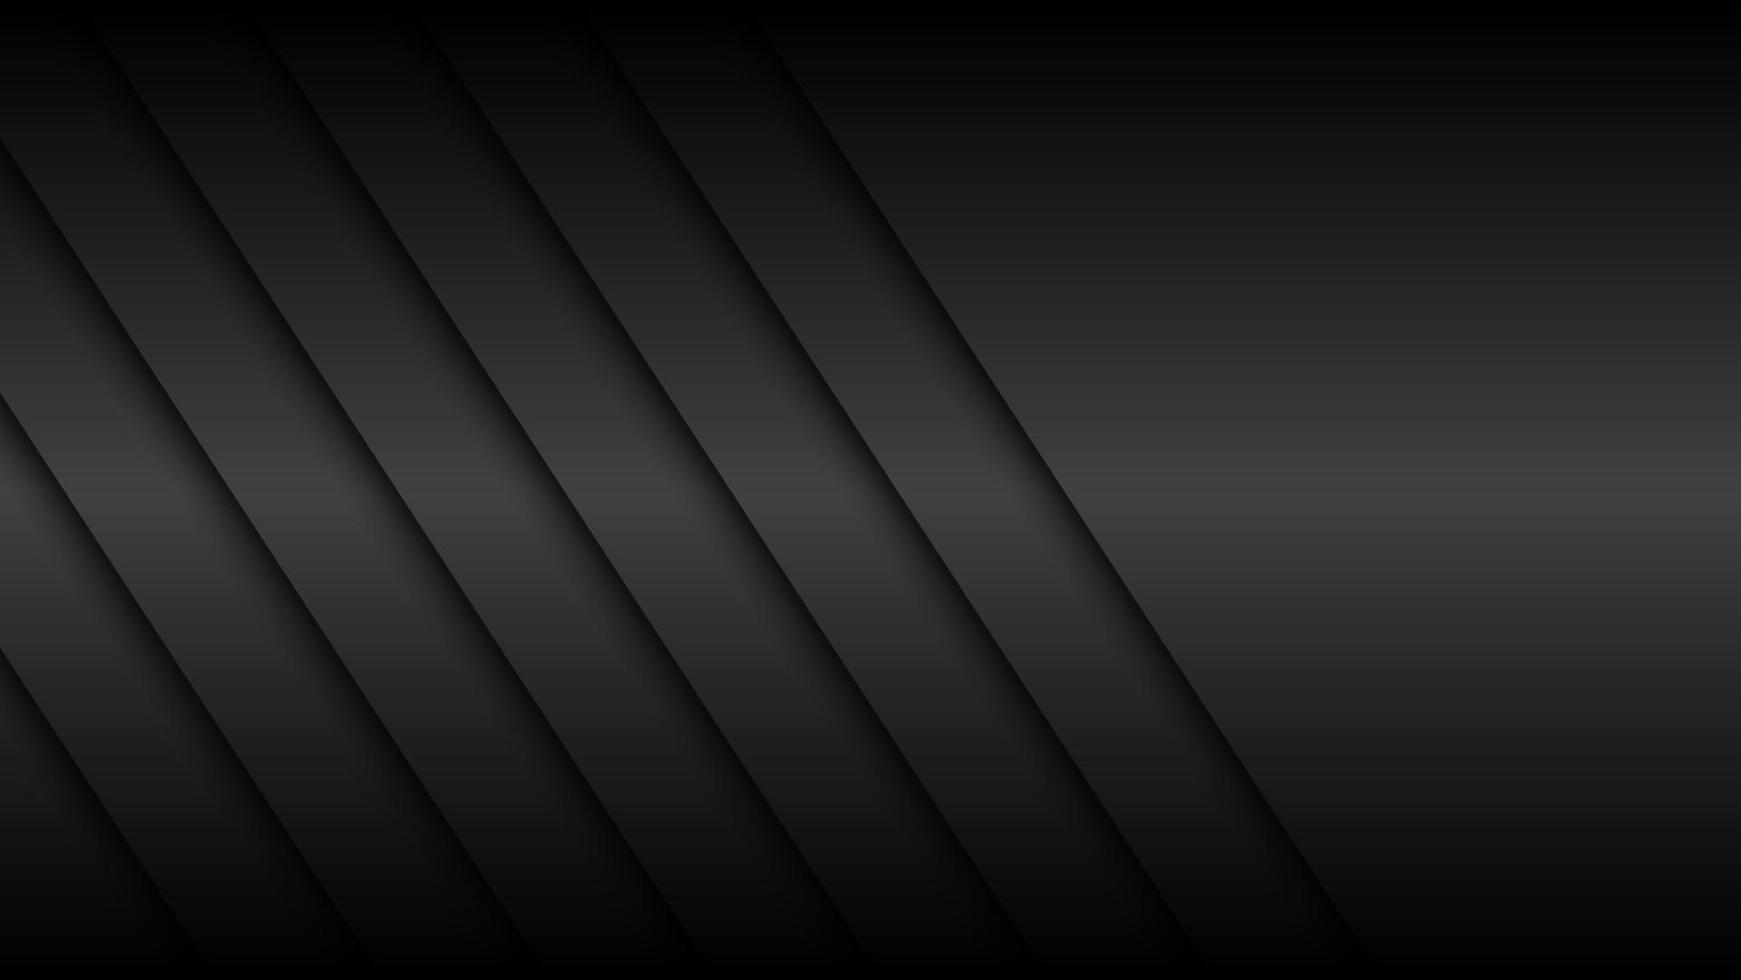 sfondo di design materiale nero con ombre diagonali, illustrazione vettoriale widescreen astratta moderna